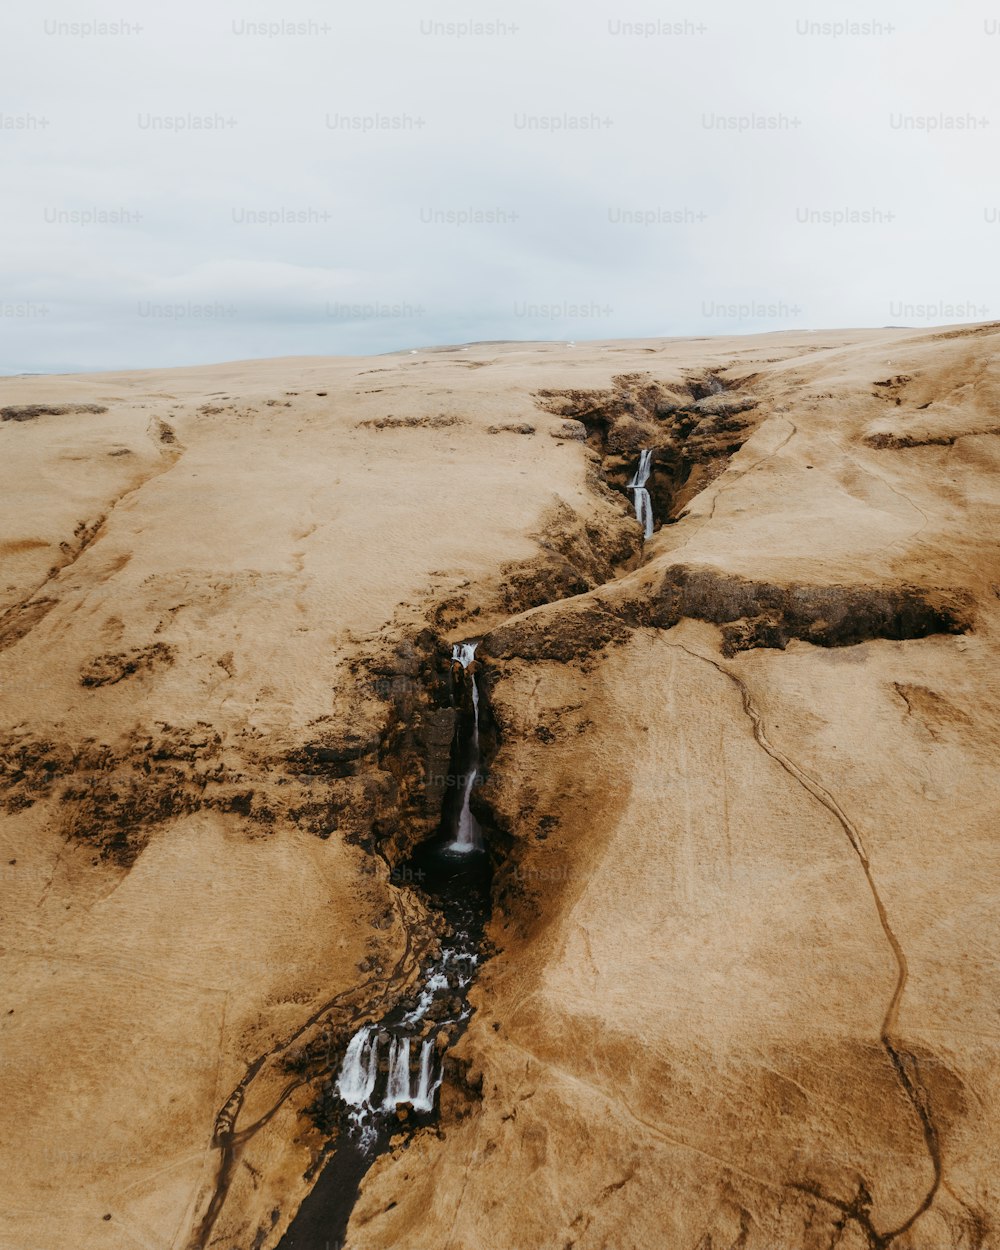 a stream of water running through a desert landscape